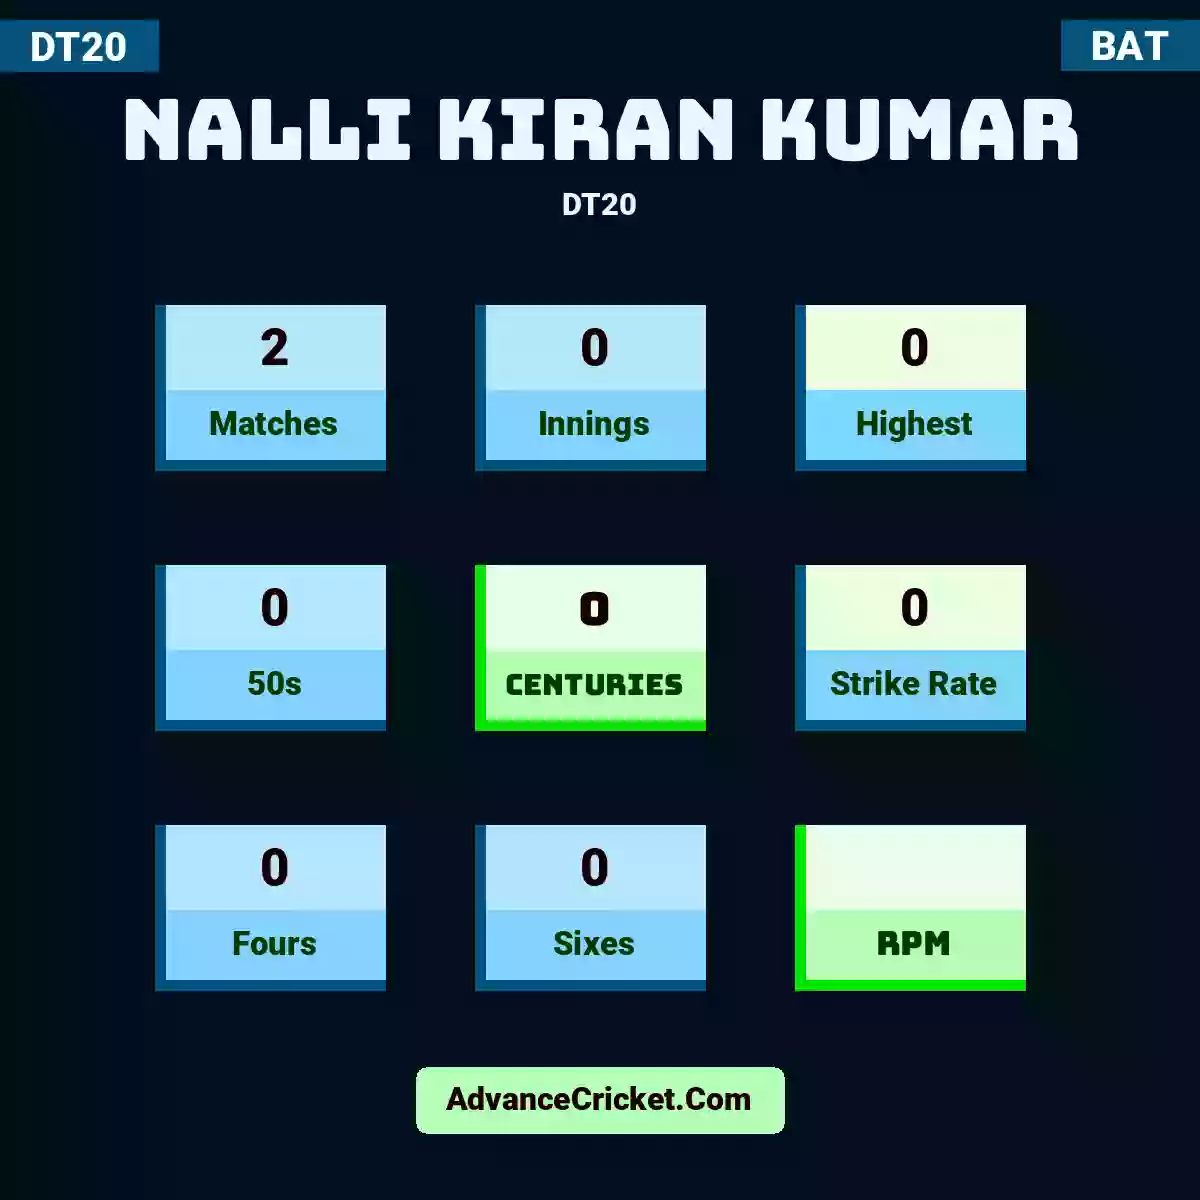 Nalli Kiran Kumar DT20 , Nalli Kiran Kumar played 2 matches, scored 0 runs as highest, 0 half-centuries, and 0 centuries, with a strike rate of 0. N.Kiran.Kumar hit 0 fours and 0 sixes.